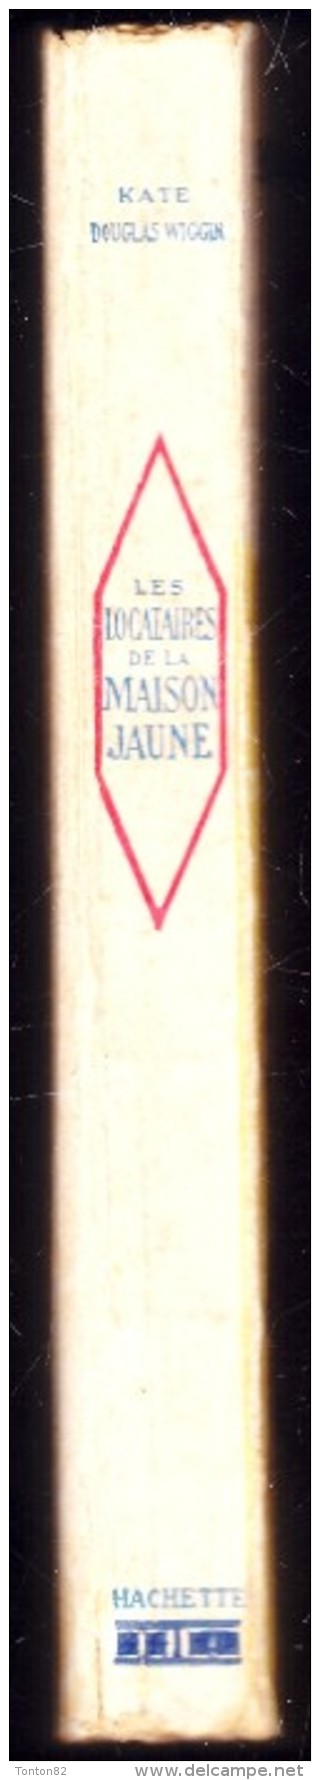 Kate Douglas Wiggin - Les Locataires De La Maison Jaune -  Librairie Hachette - ( 1938 ) . - Bibliotheque De La Jeunesse